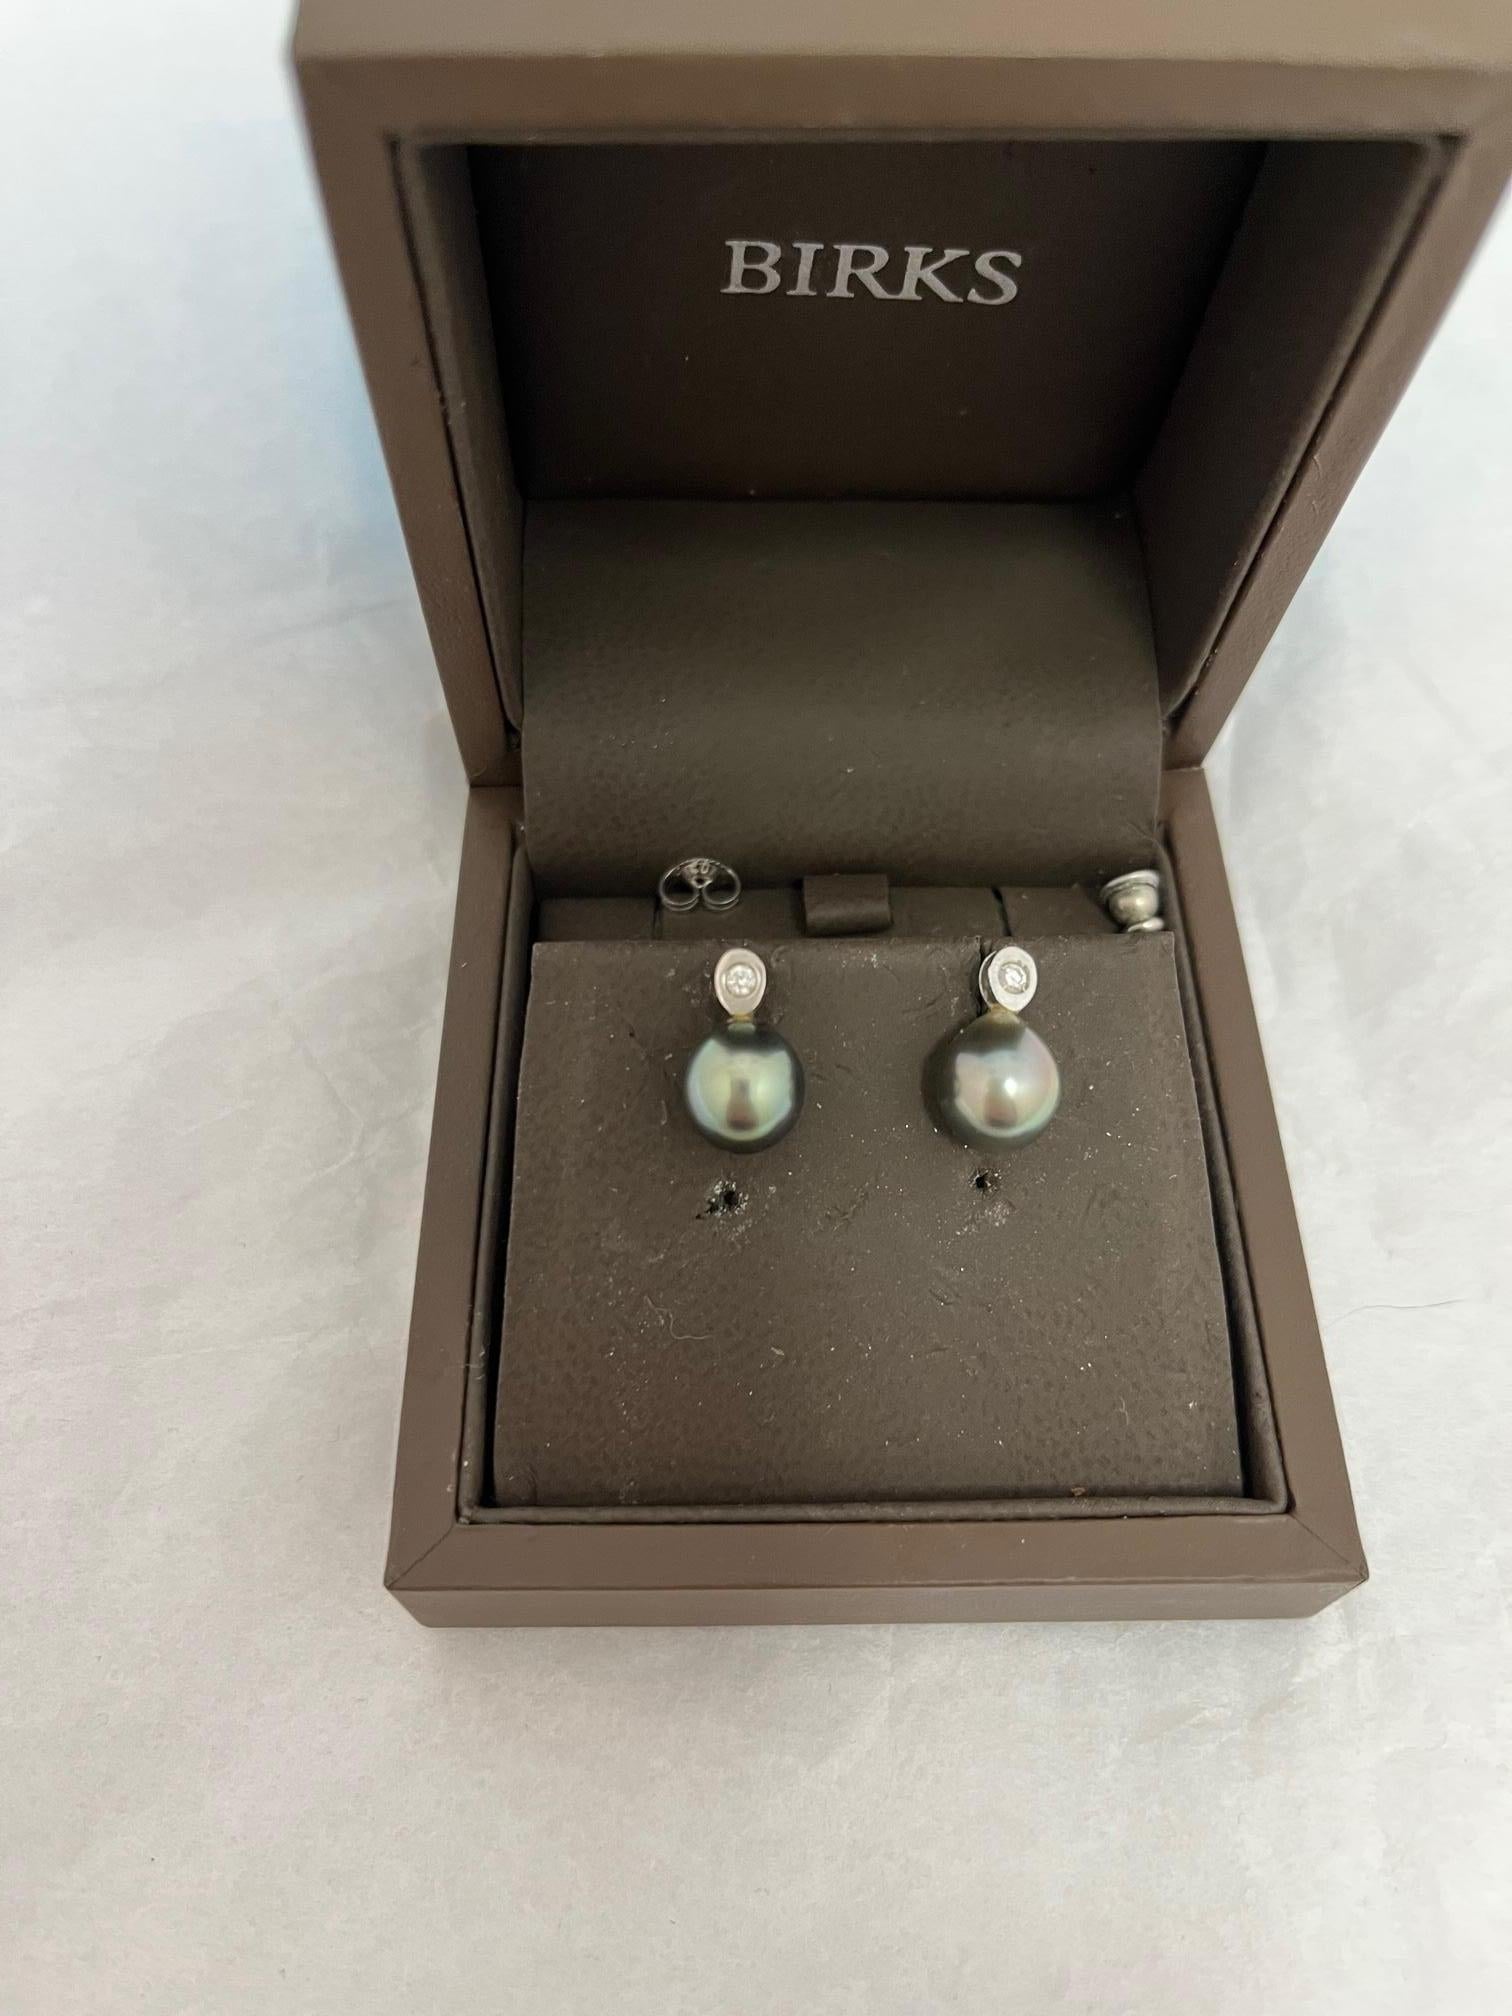 Birks ist ein kanadisches Juweliergeschäft der Spitzenklasse, das 1879 in Montreal von Henry Birks, einem Silberschmiedemeister aus  Sheffield, England.
Dies ist ein wunderschön gearbeitetes Paar Ohrringe in ihrer Originalverpackung. Die